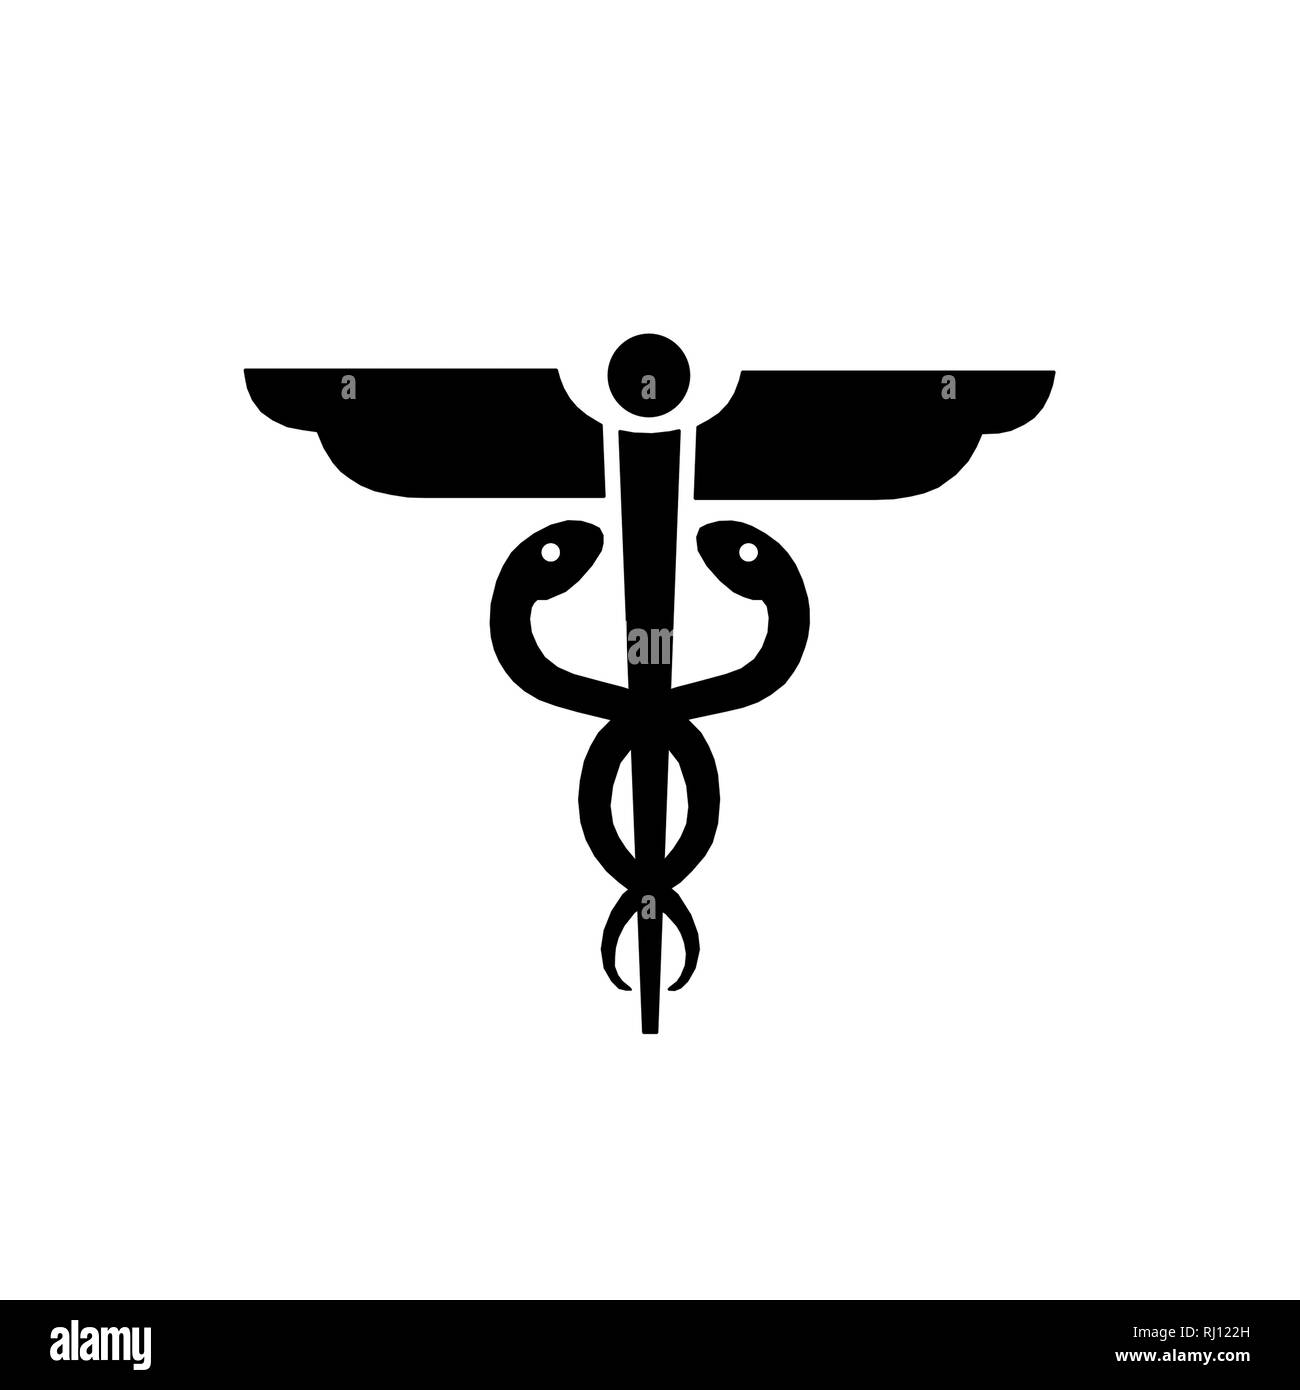 caduceus medical symbol icon illustration isolated Stock Photo